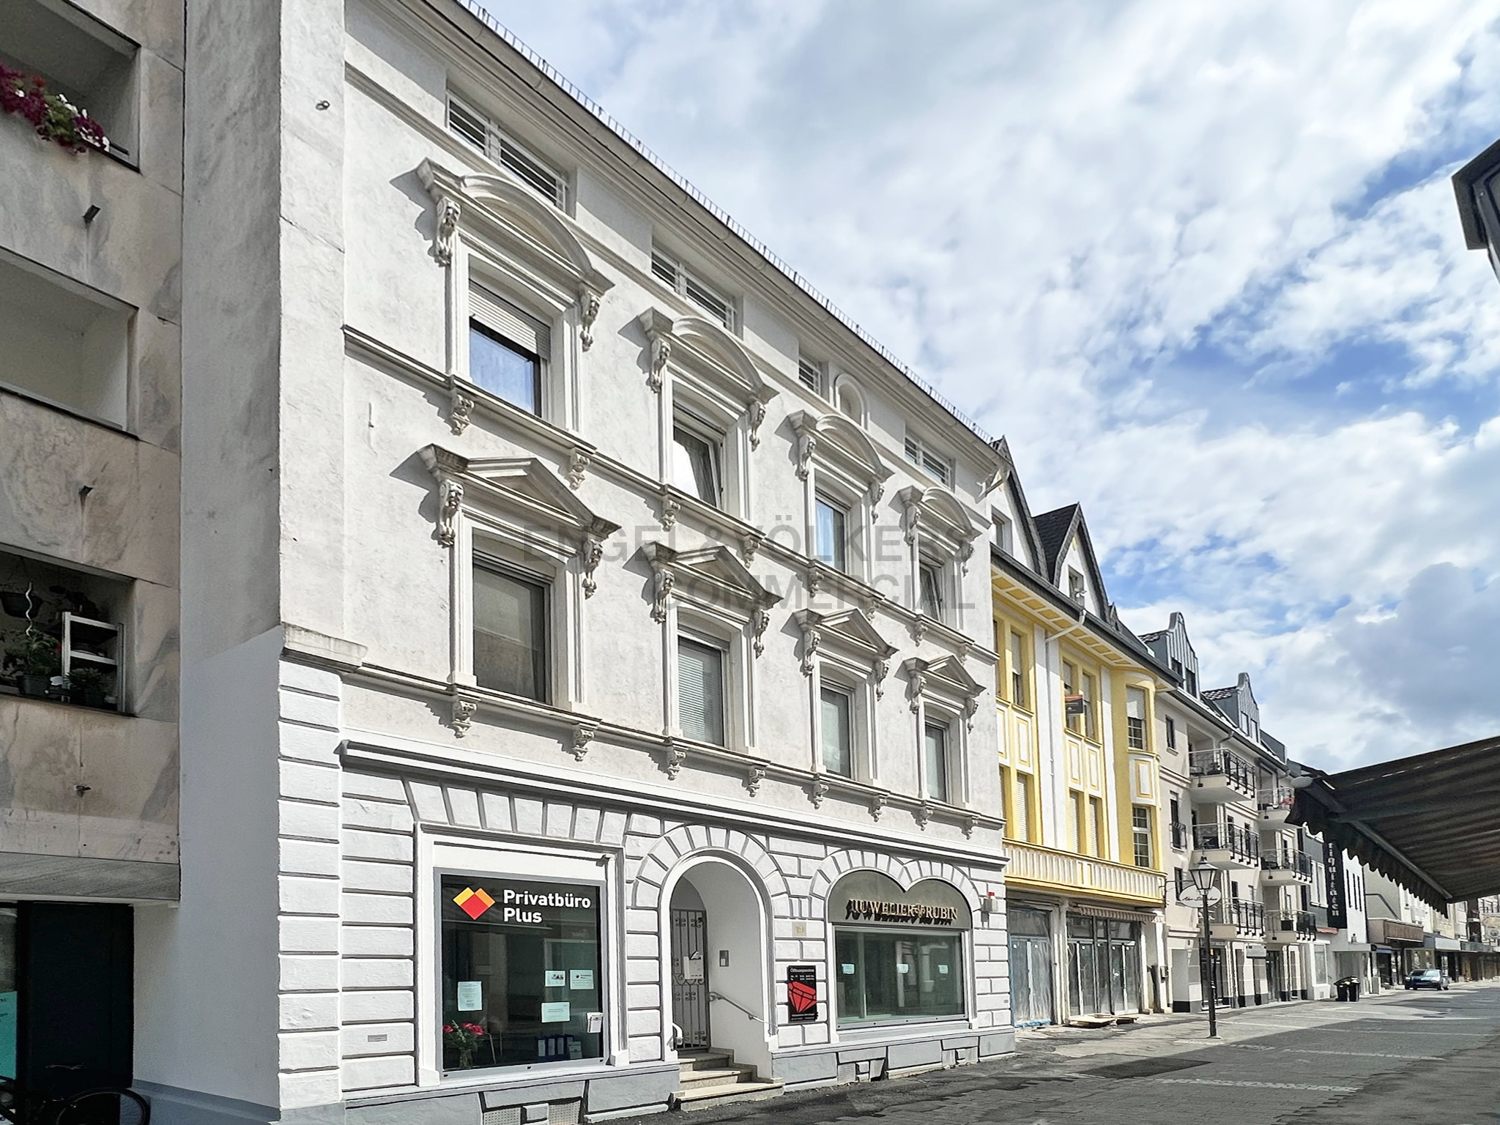 Investment / Wohn- und Geschäftshäuser in Bonn - Außenansicht